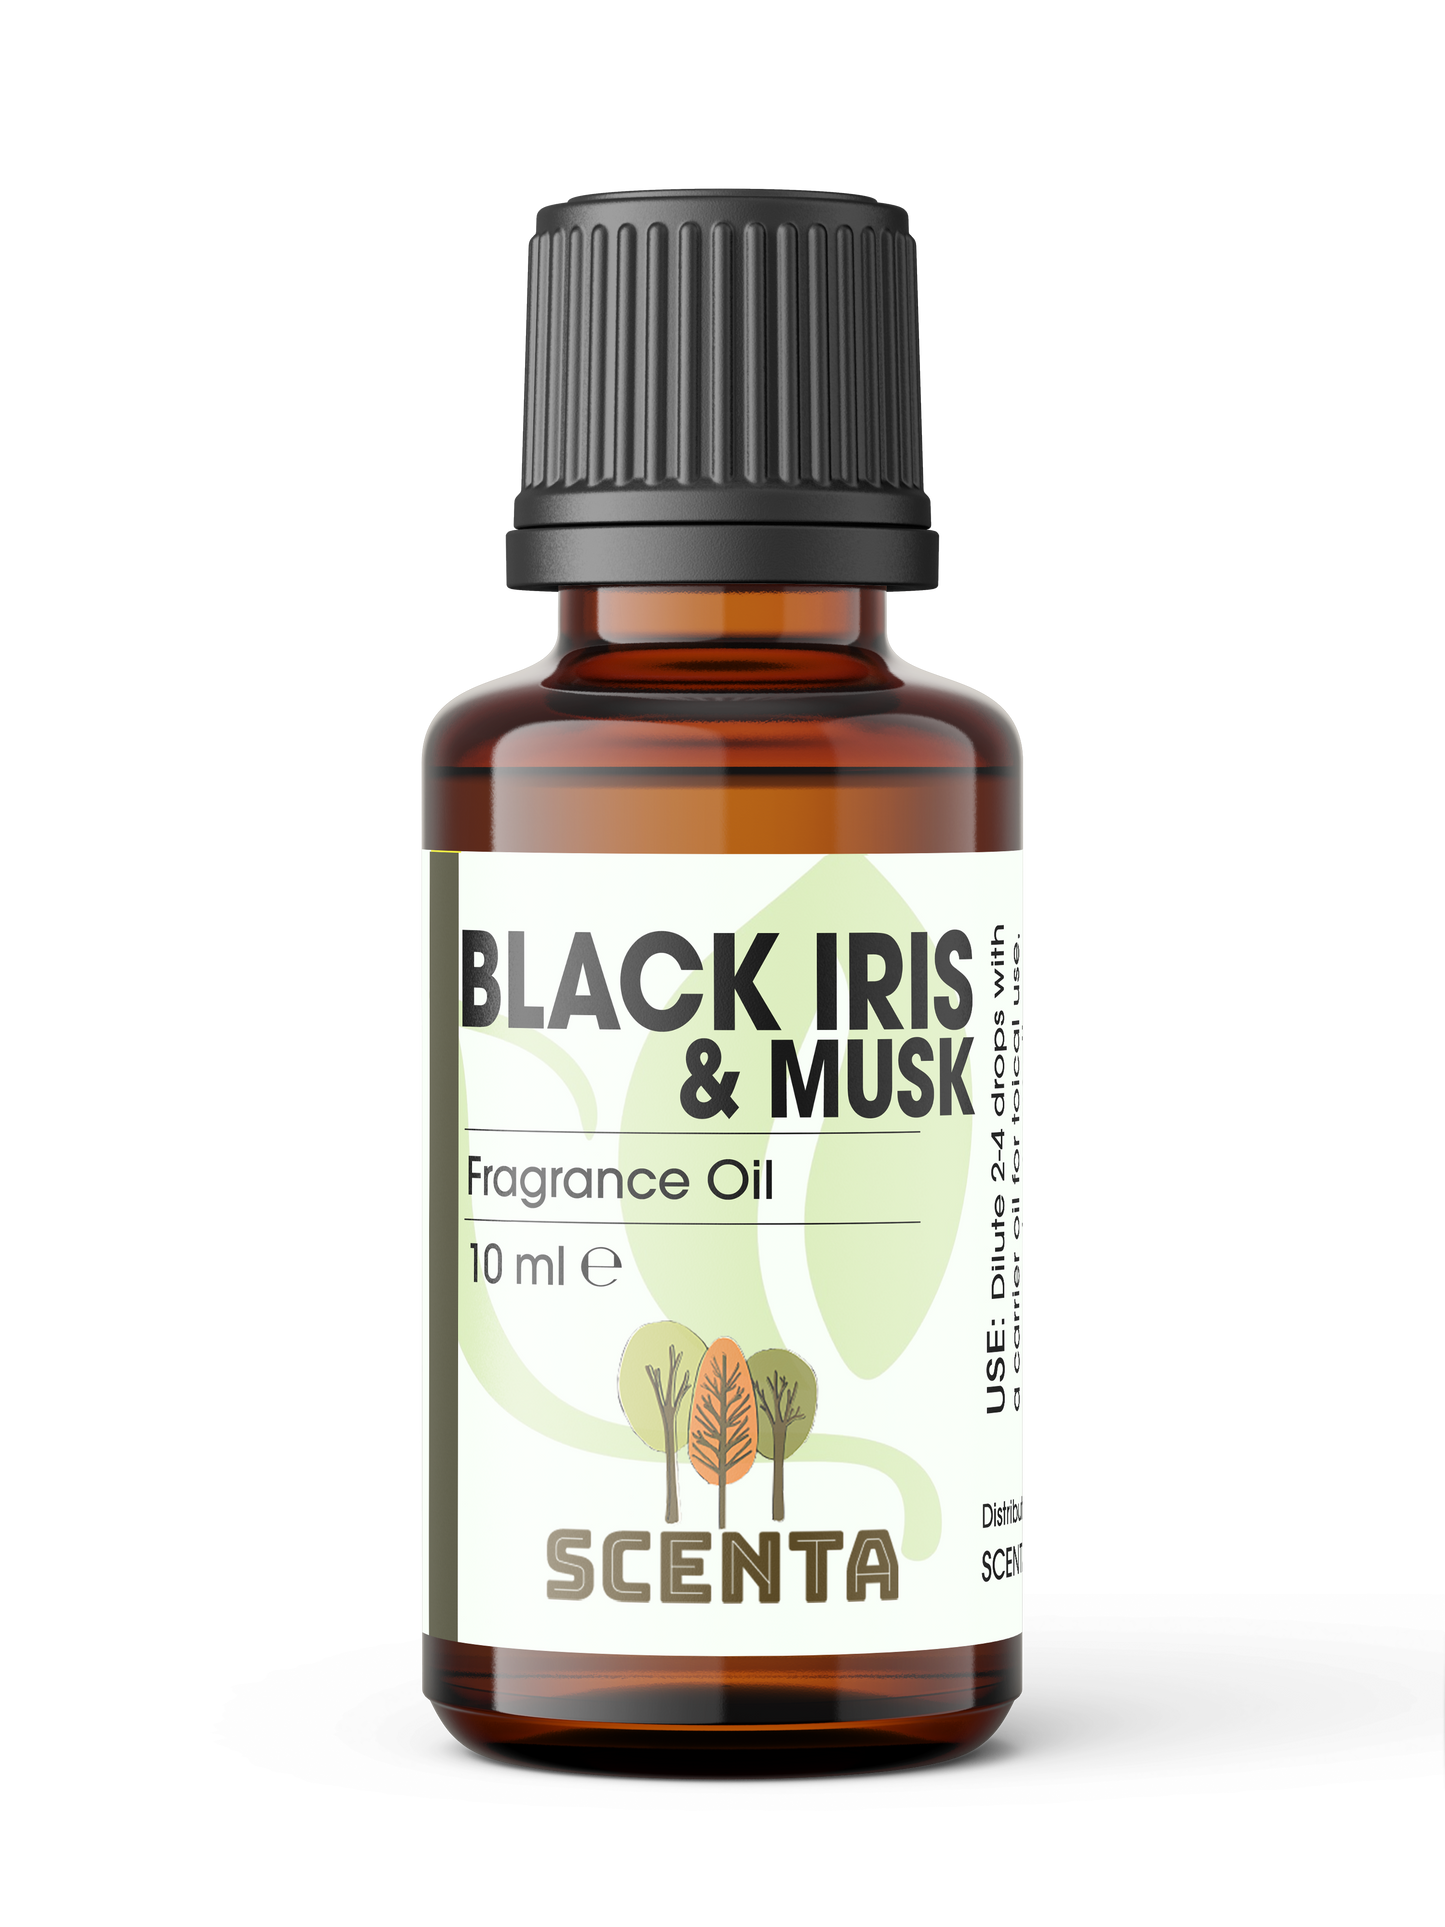 Black Iris & Musk Fragrance Oil 10ml